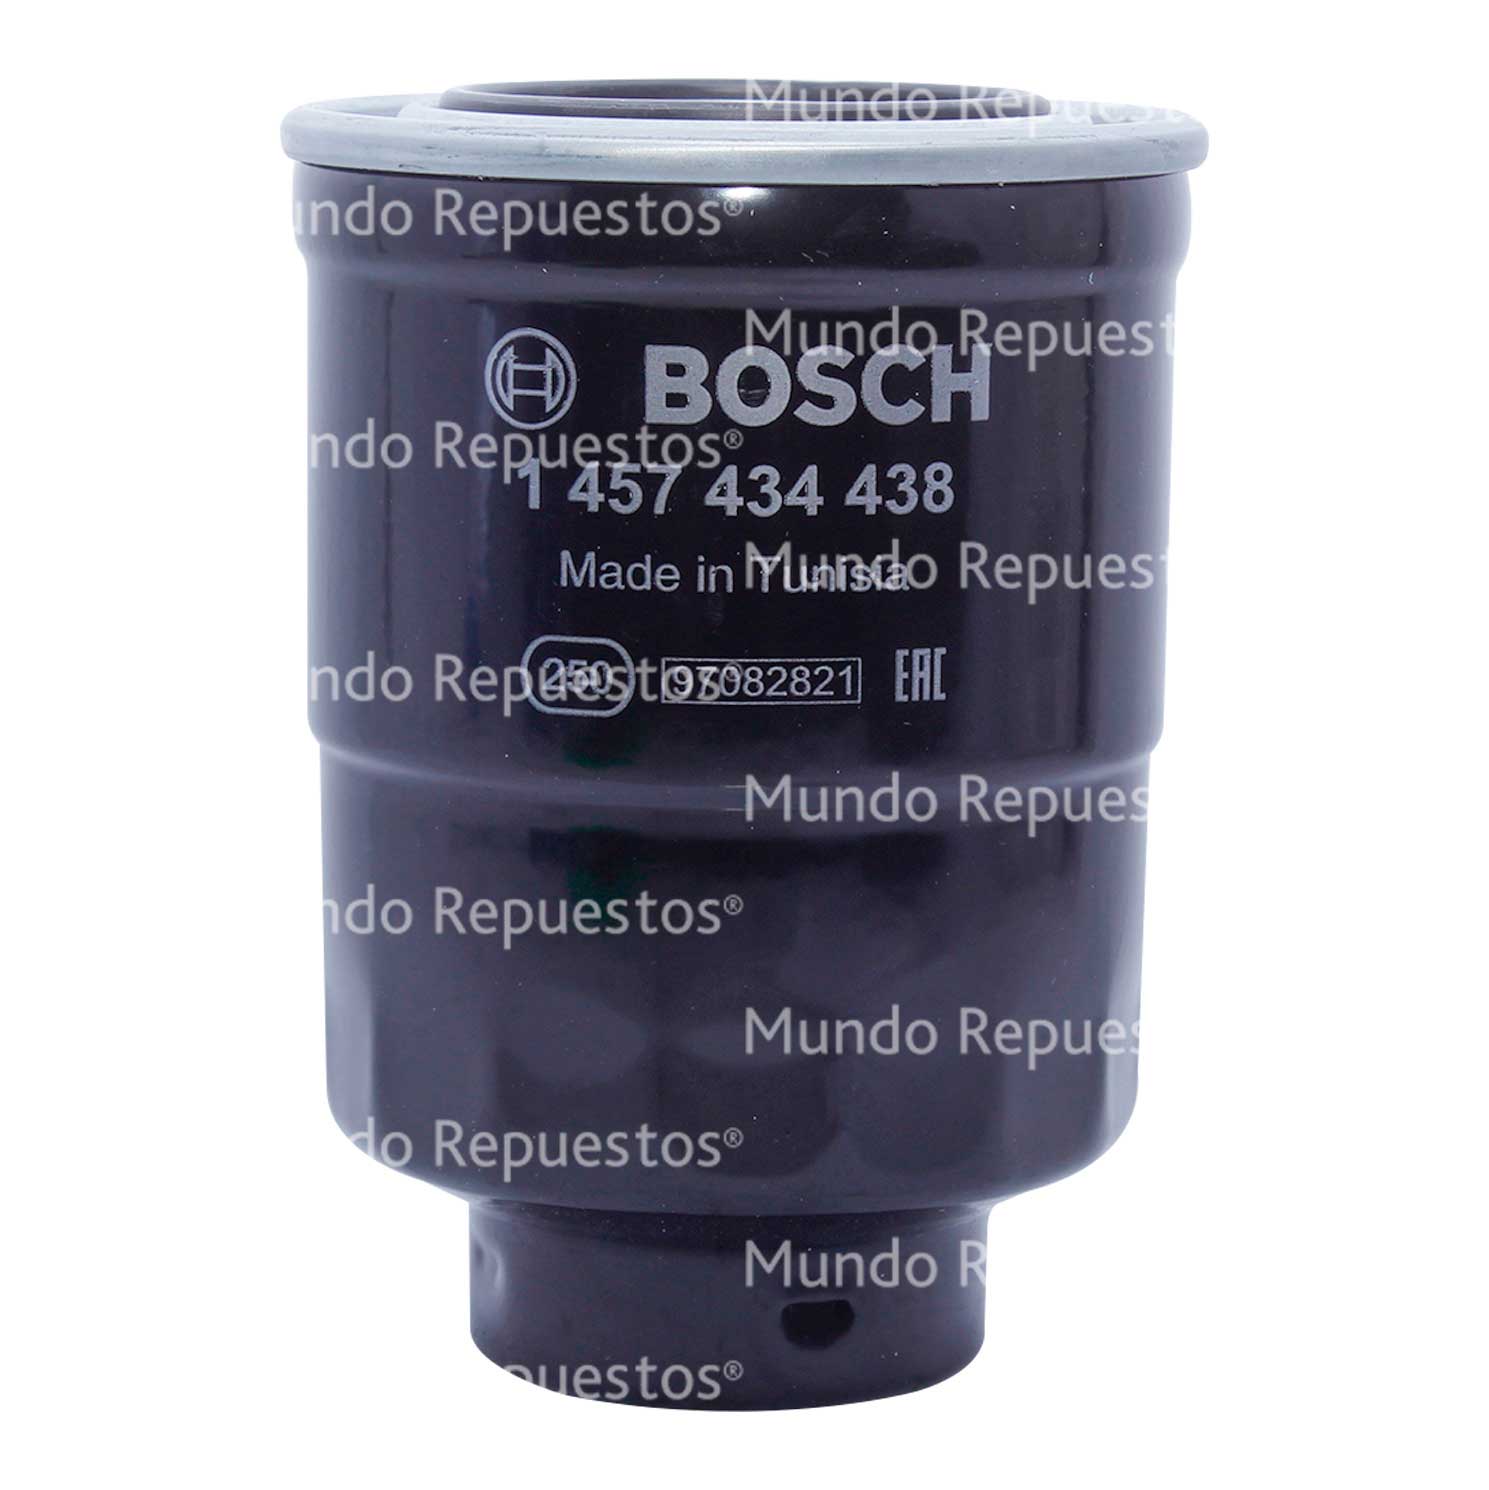 Filtro petroleo marca Bosch disponible en Mundo Repuestos